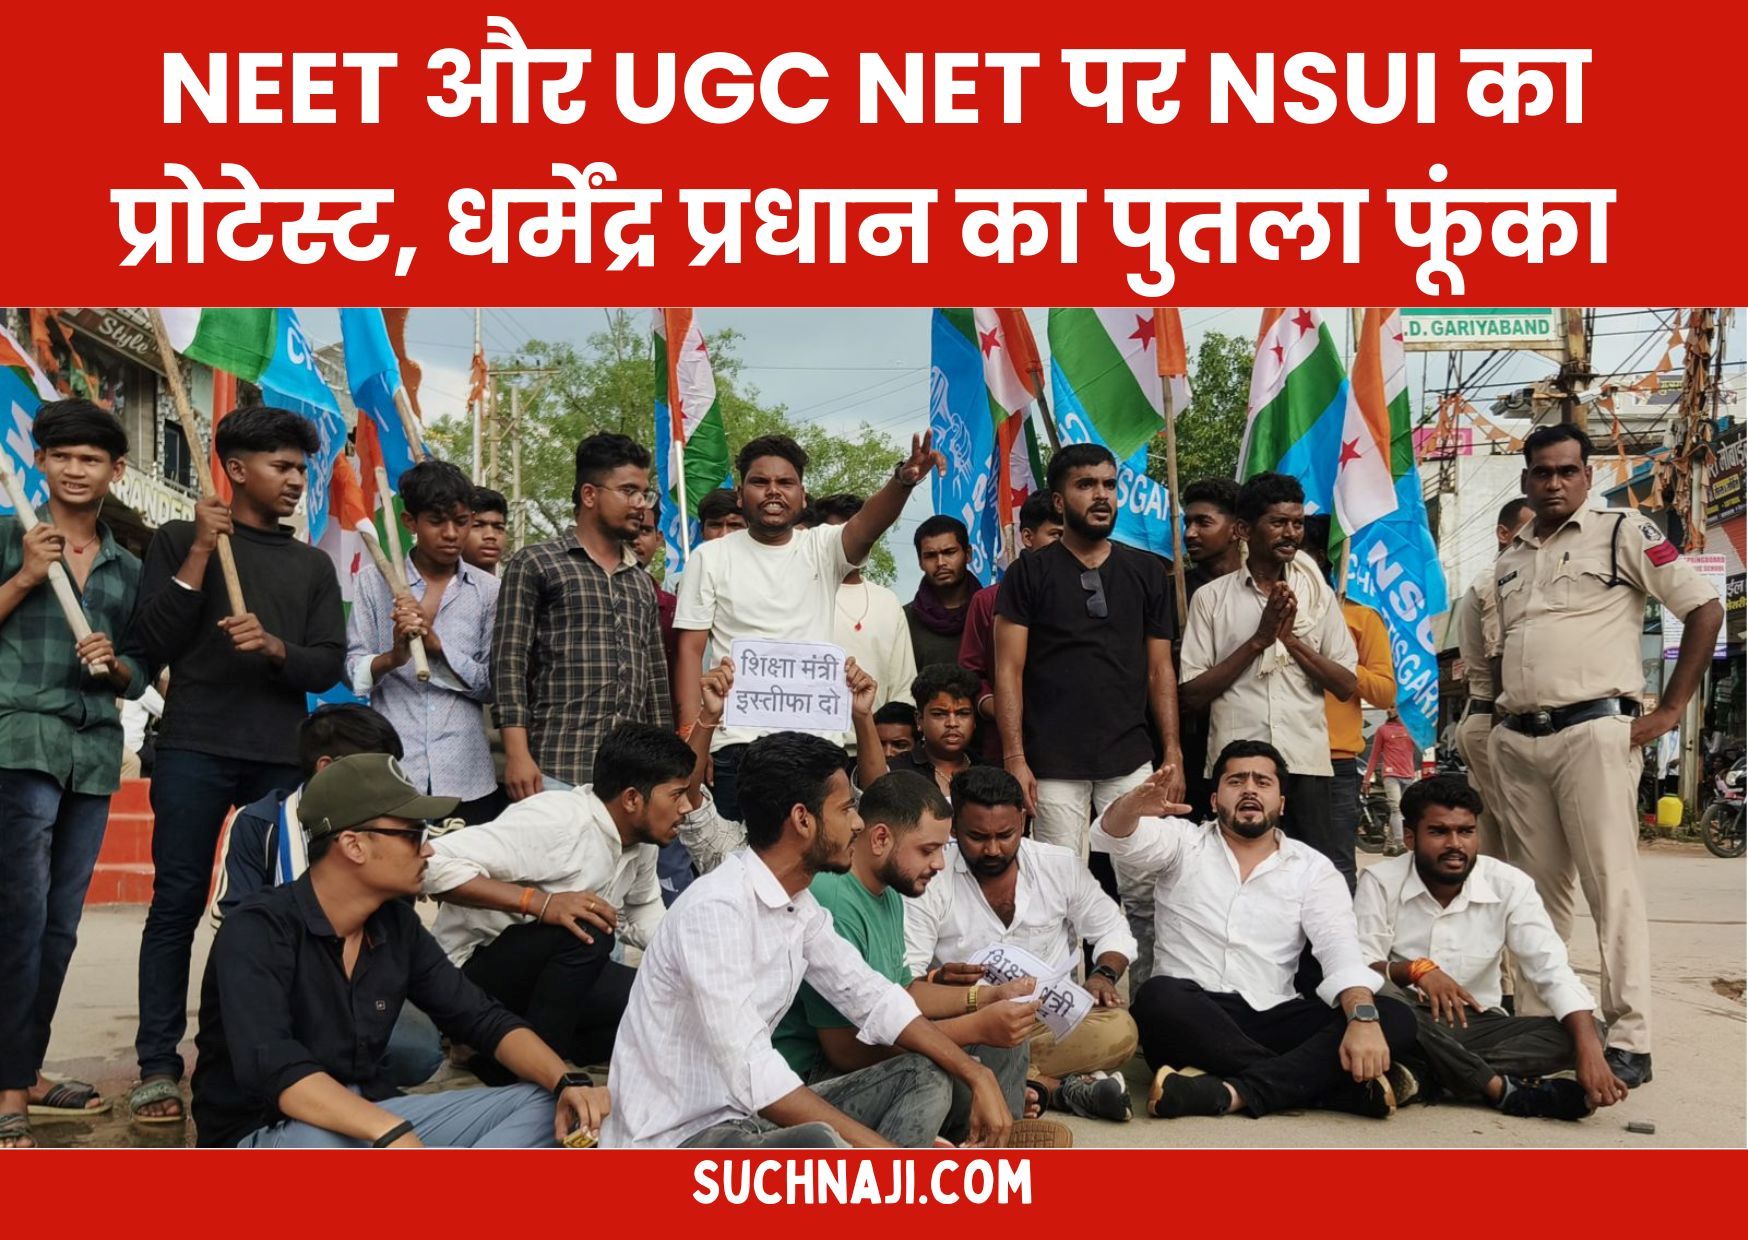 NEET और UGC NET पर NSUI का प्रोटेस्ट, शिक्षा मंत्री धर्मेंद्र प्रधान का पुतला आग के हवाले, मोदी पर कटाक्ष